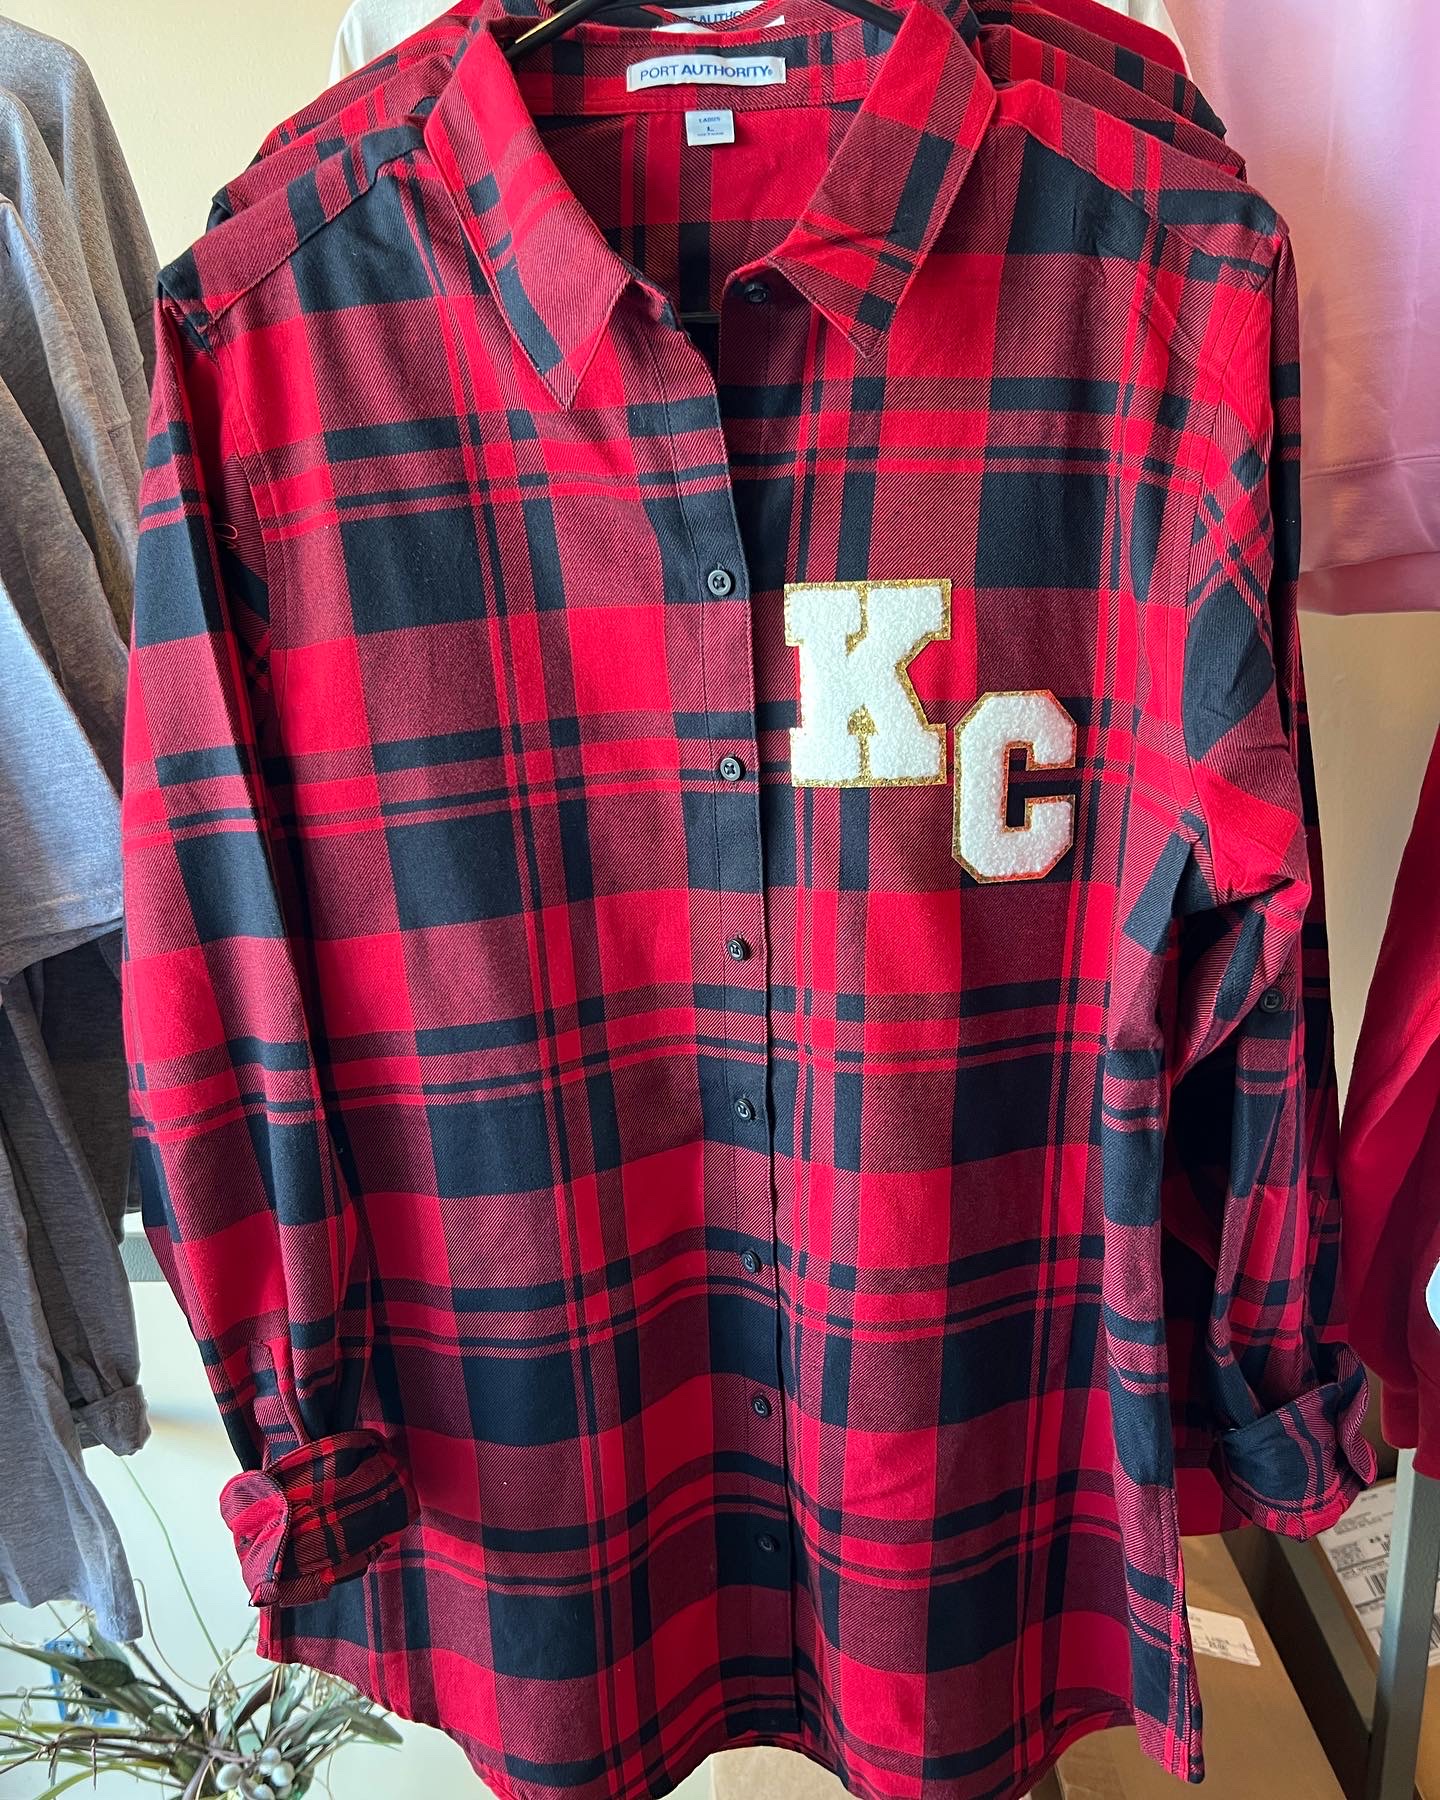 kc chiefs button up shirt